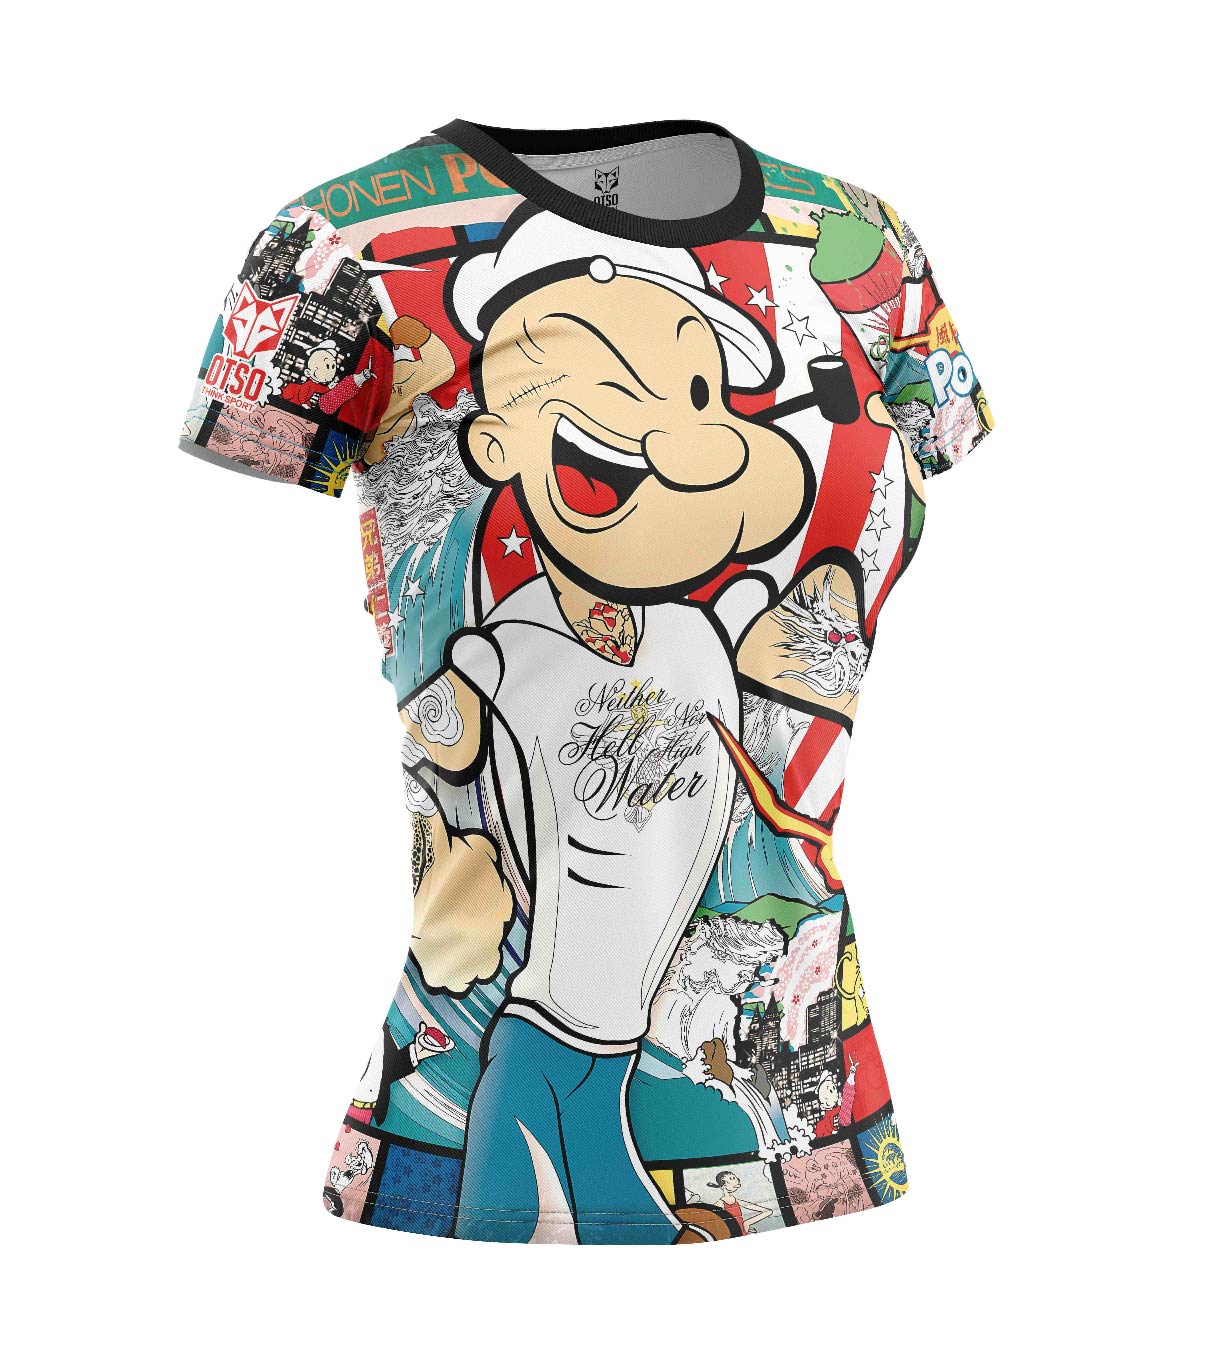 Camiseta feminina de manga curta - Popeye Art Show